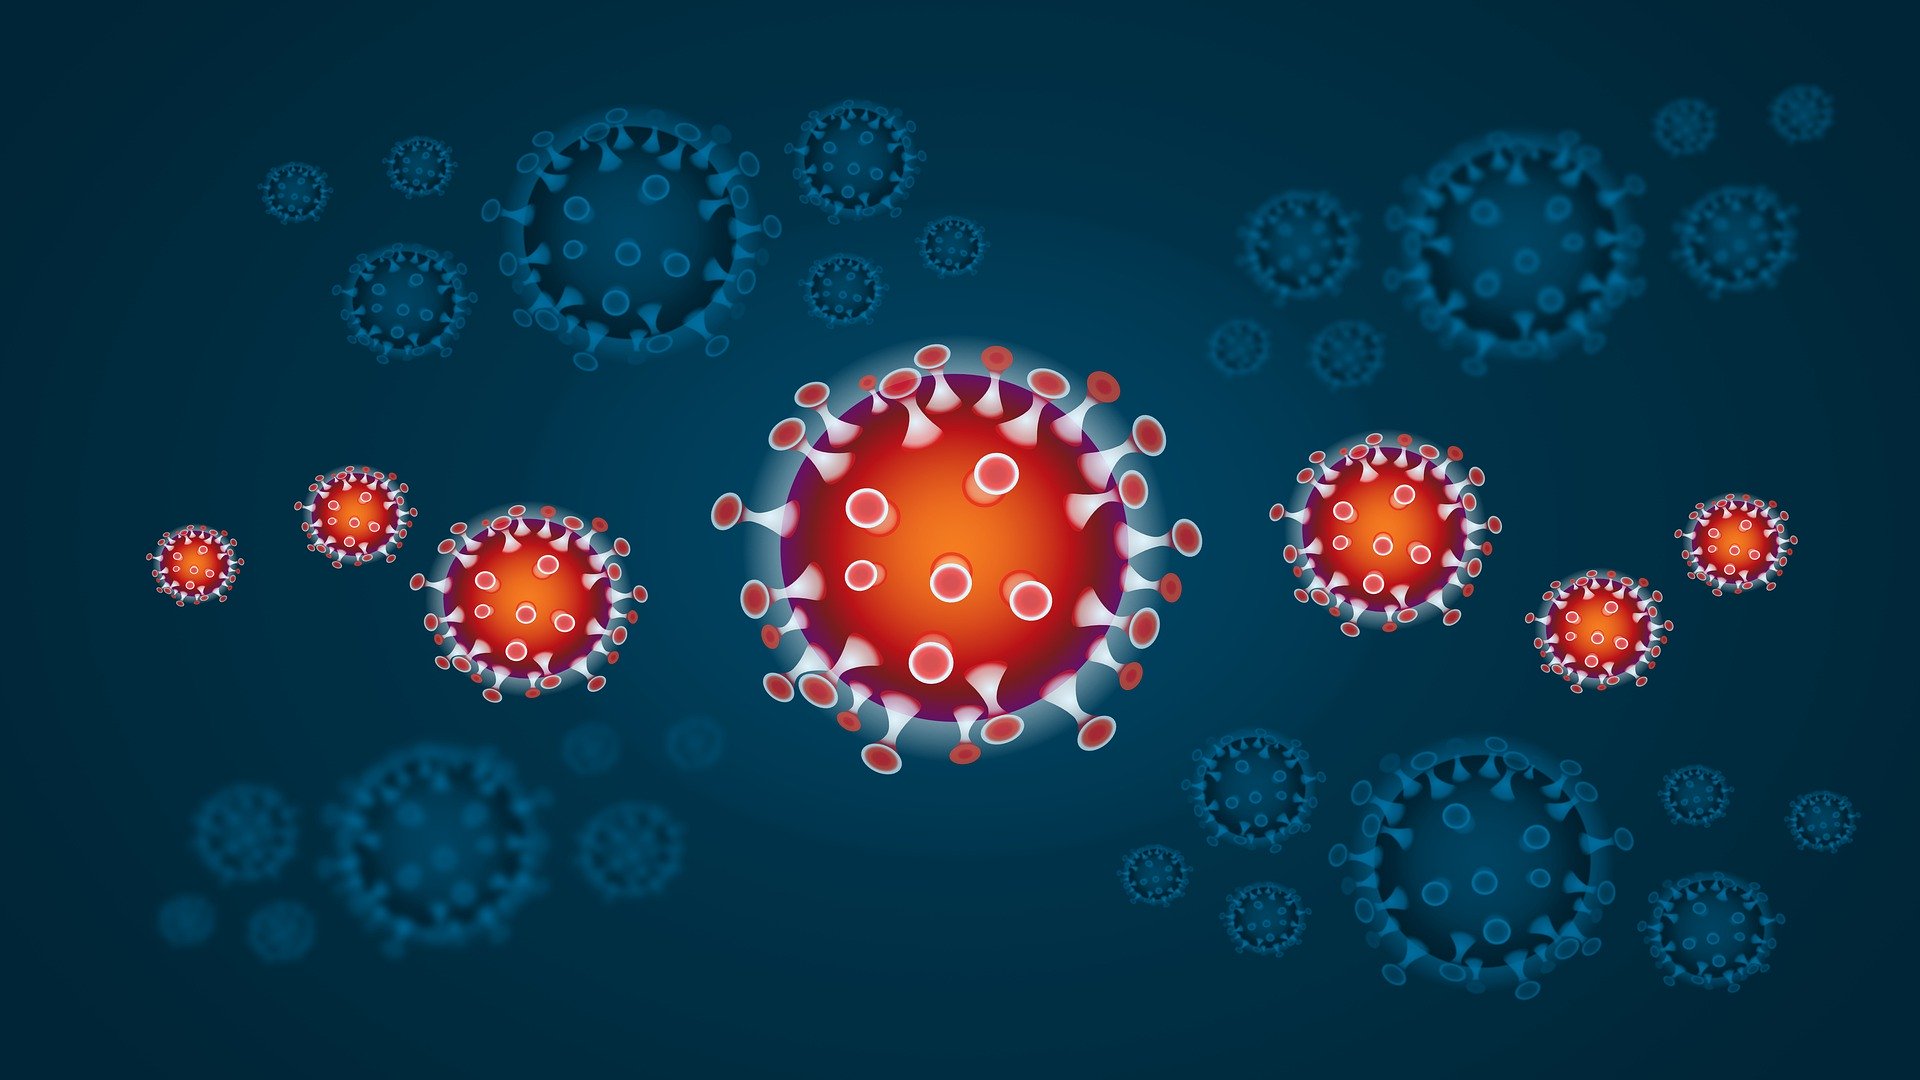 Grafik eines Viruses